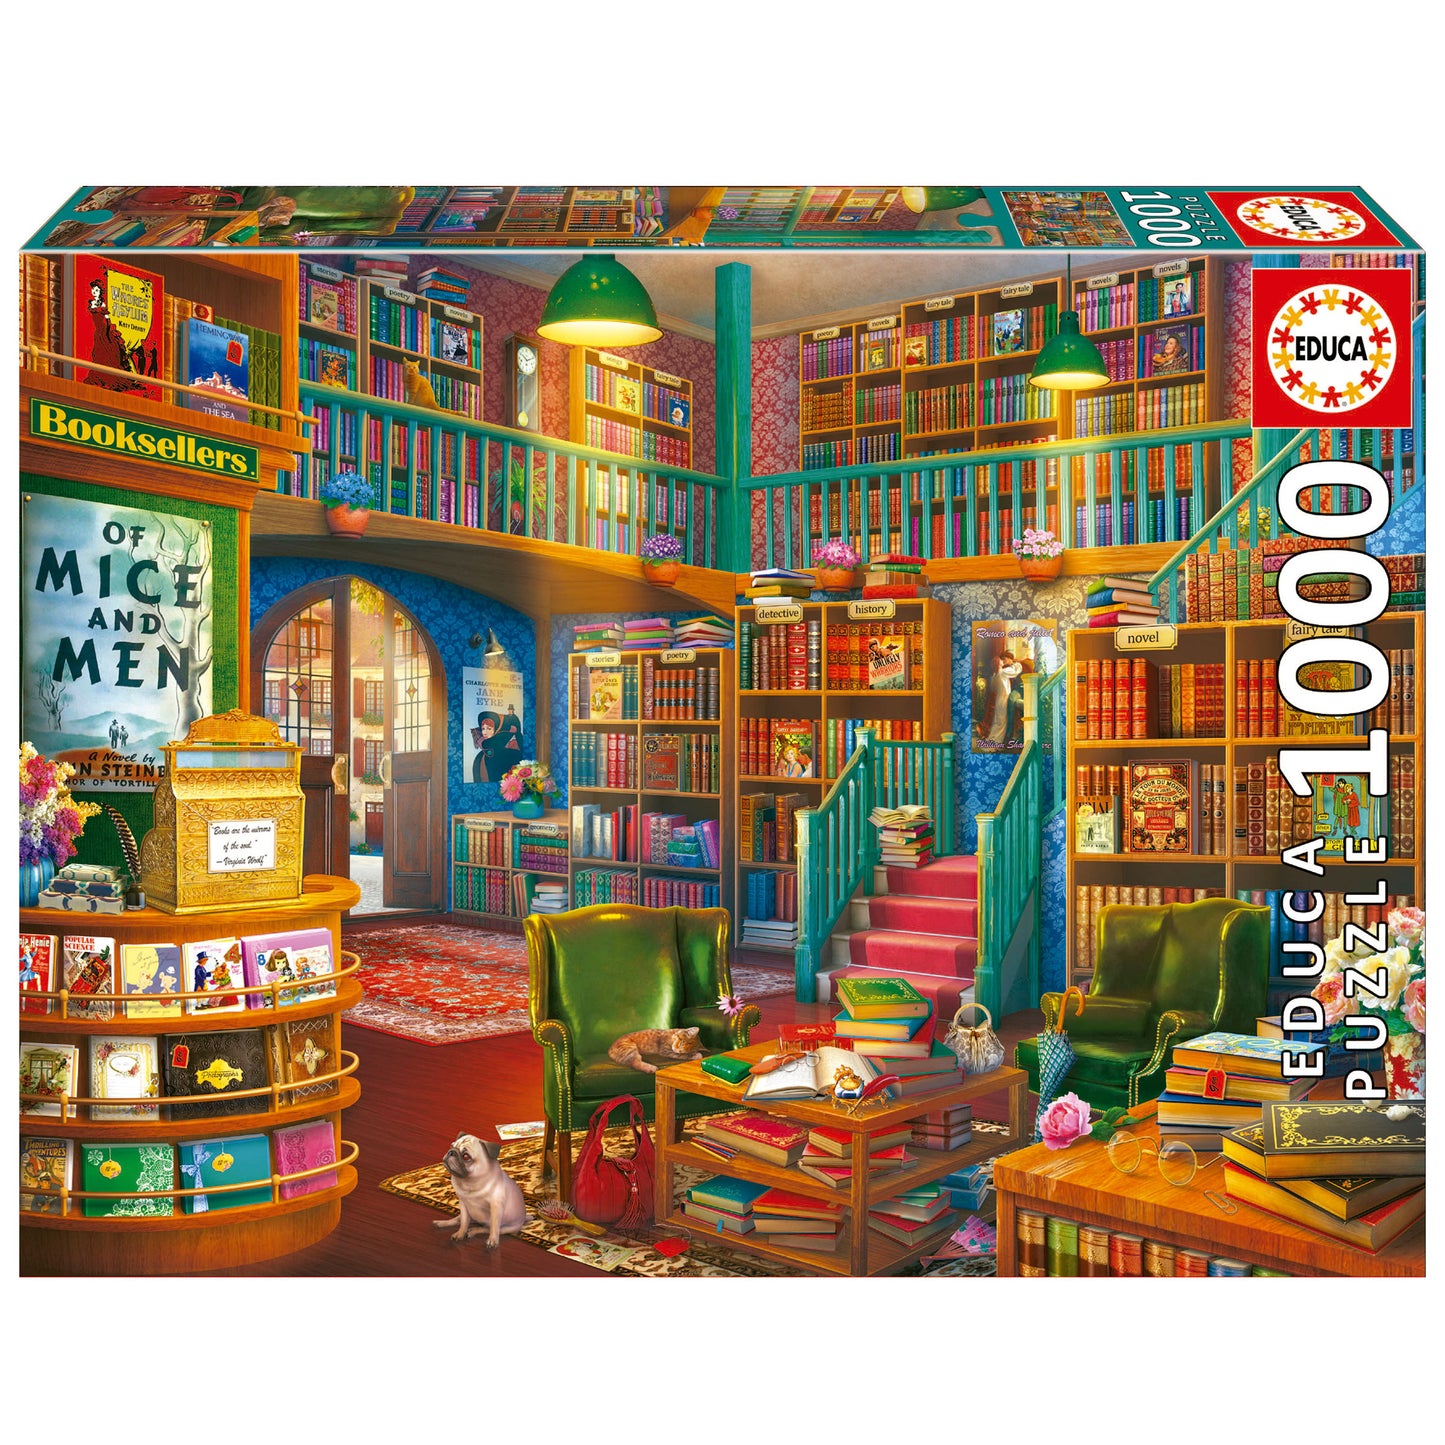 Wonderful Bookshop by Eduard-Artbeat 1000 Piece Puzzle